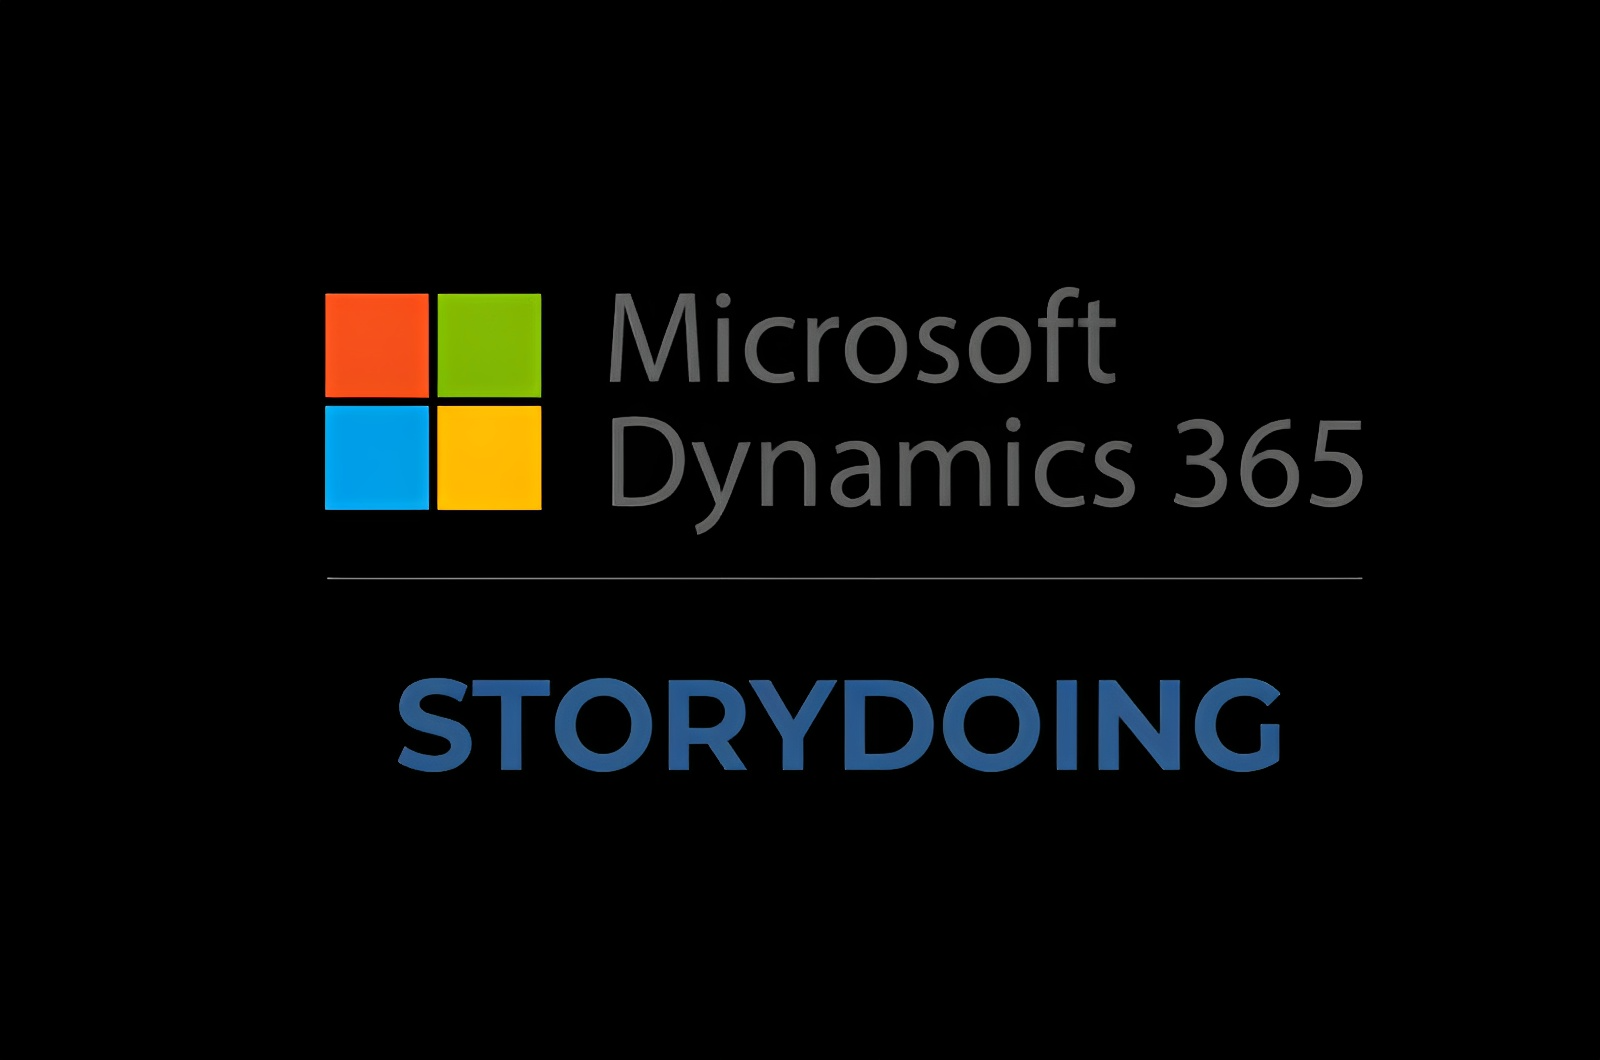 Microsoft Dynamics 365 en Experiencias LLC dirigida por Nicolás Halac y Ludmila Halac